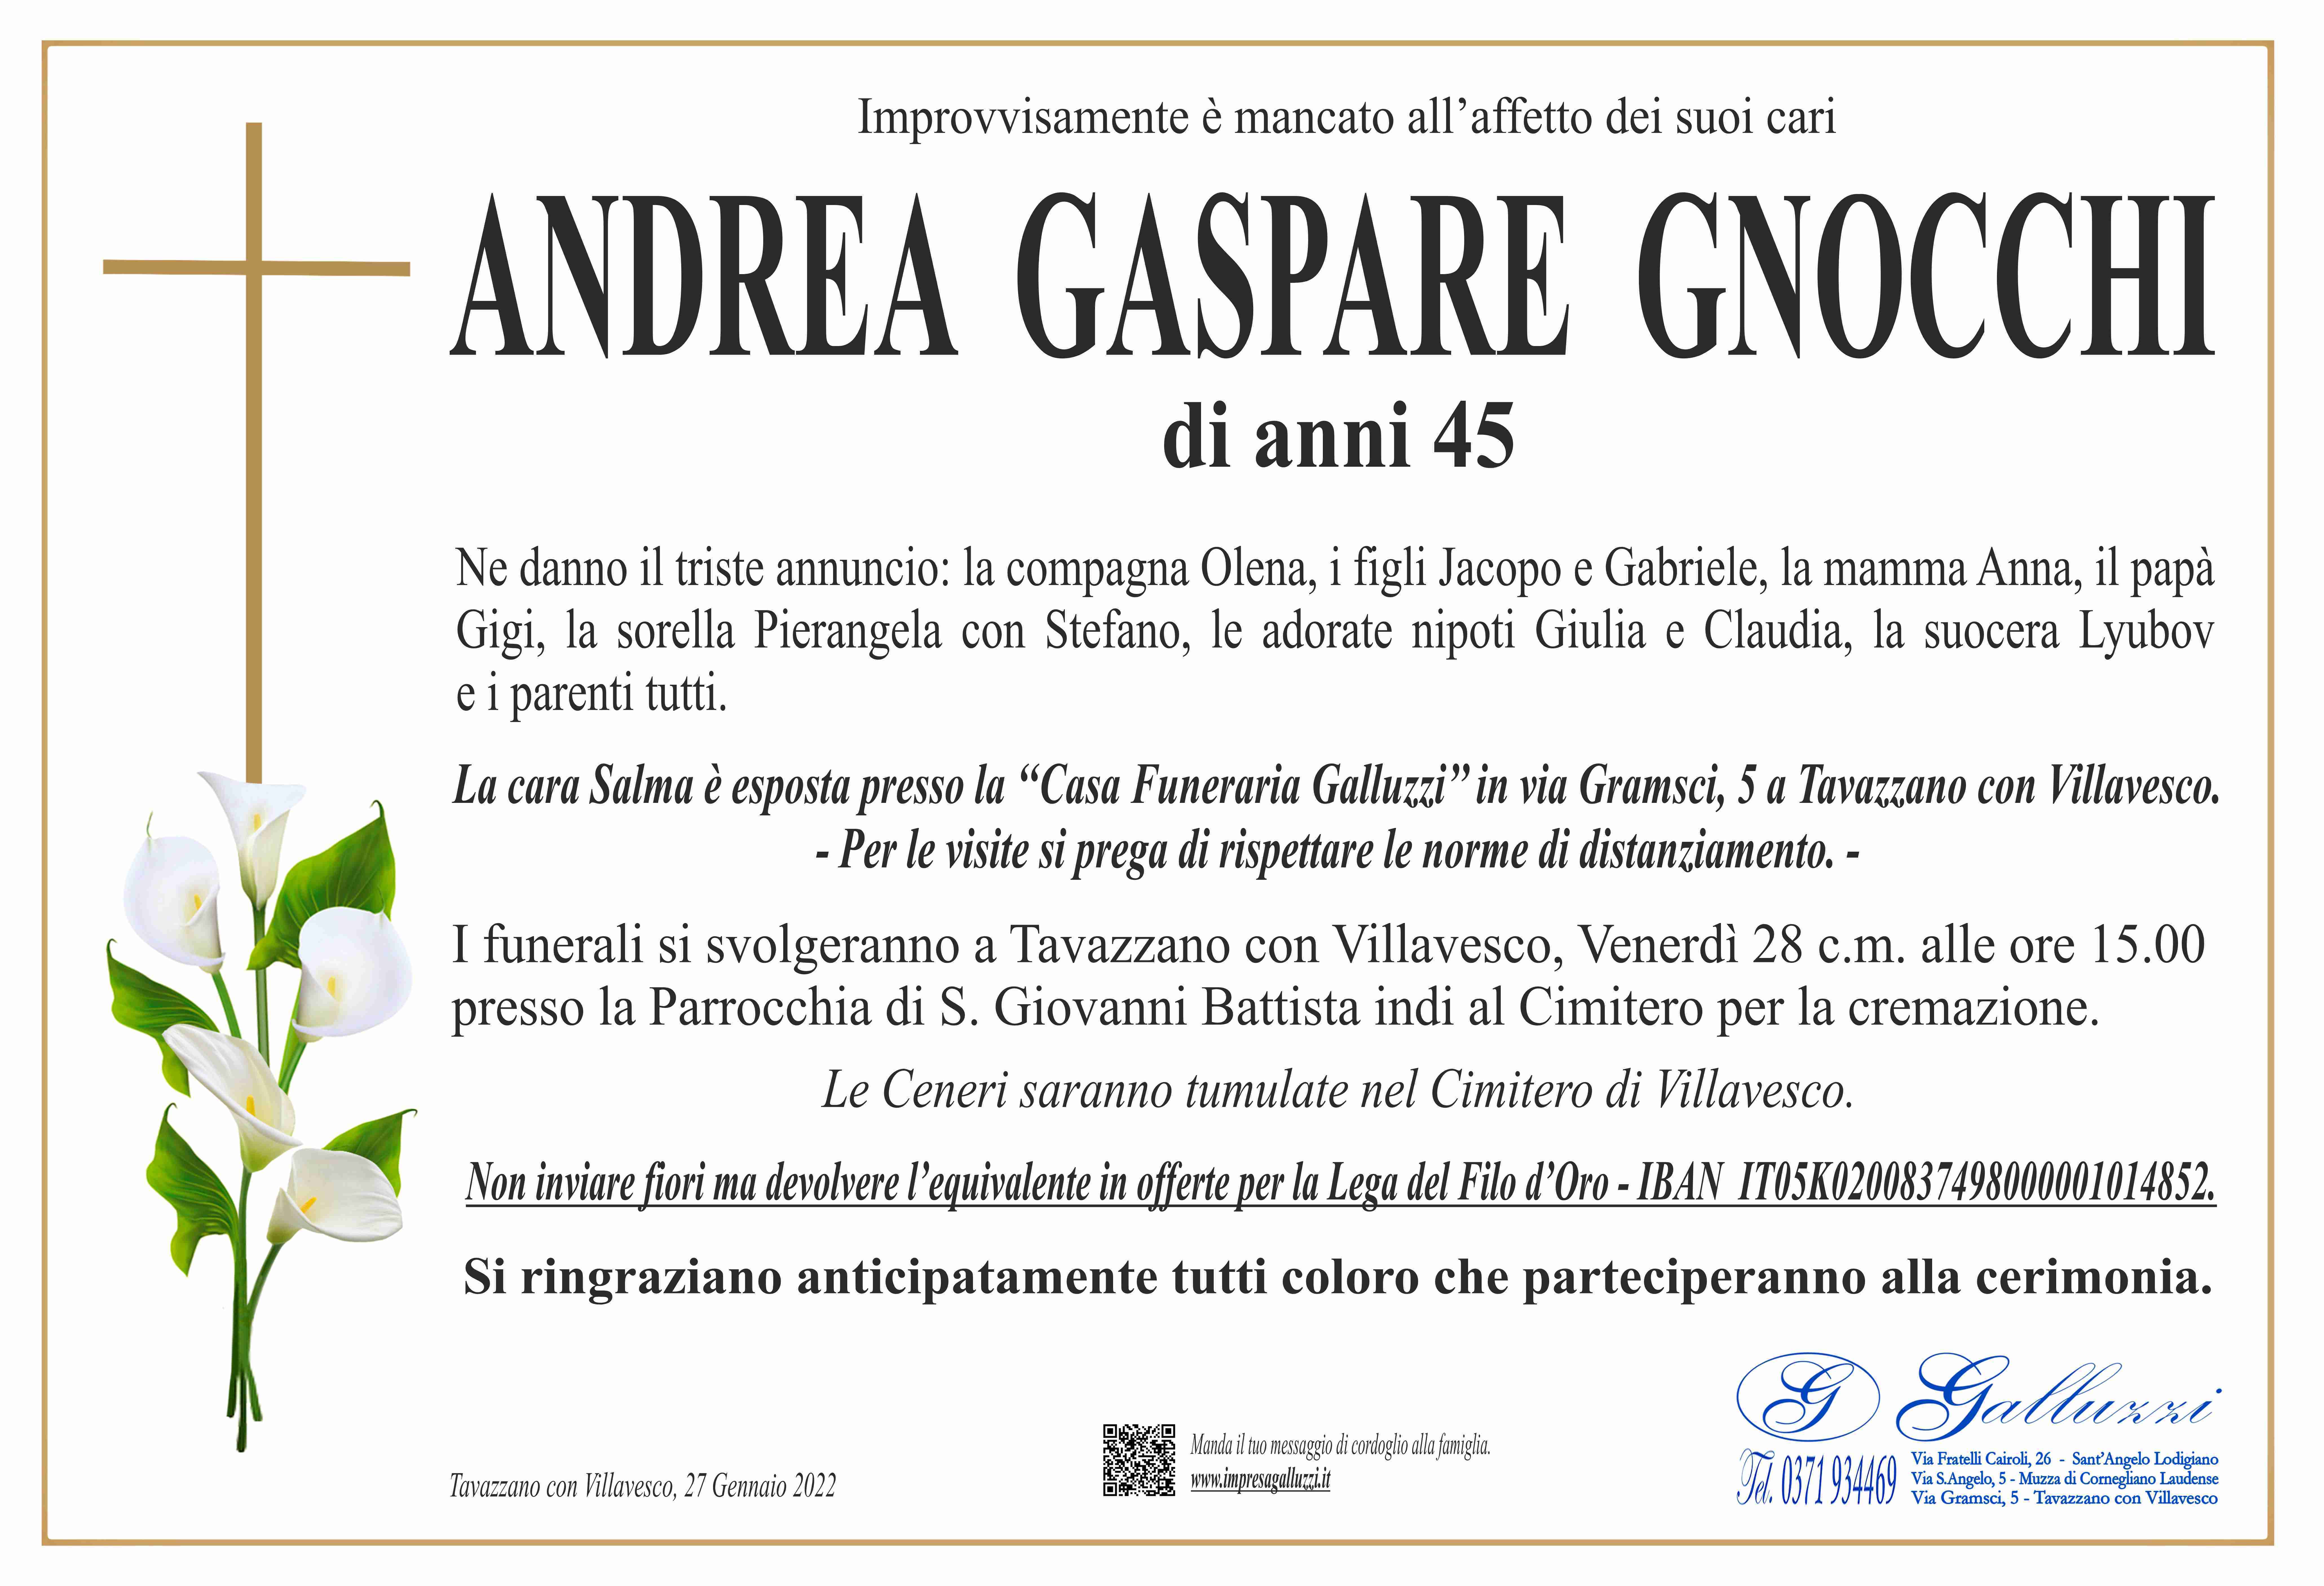 Andrea Gaspare Gnocchi